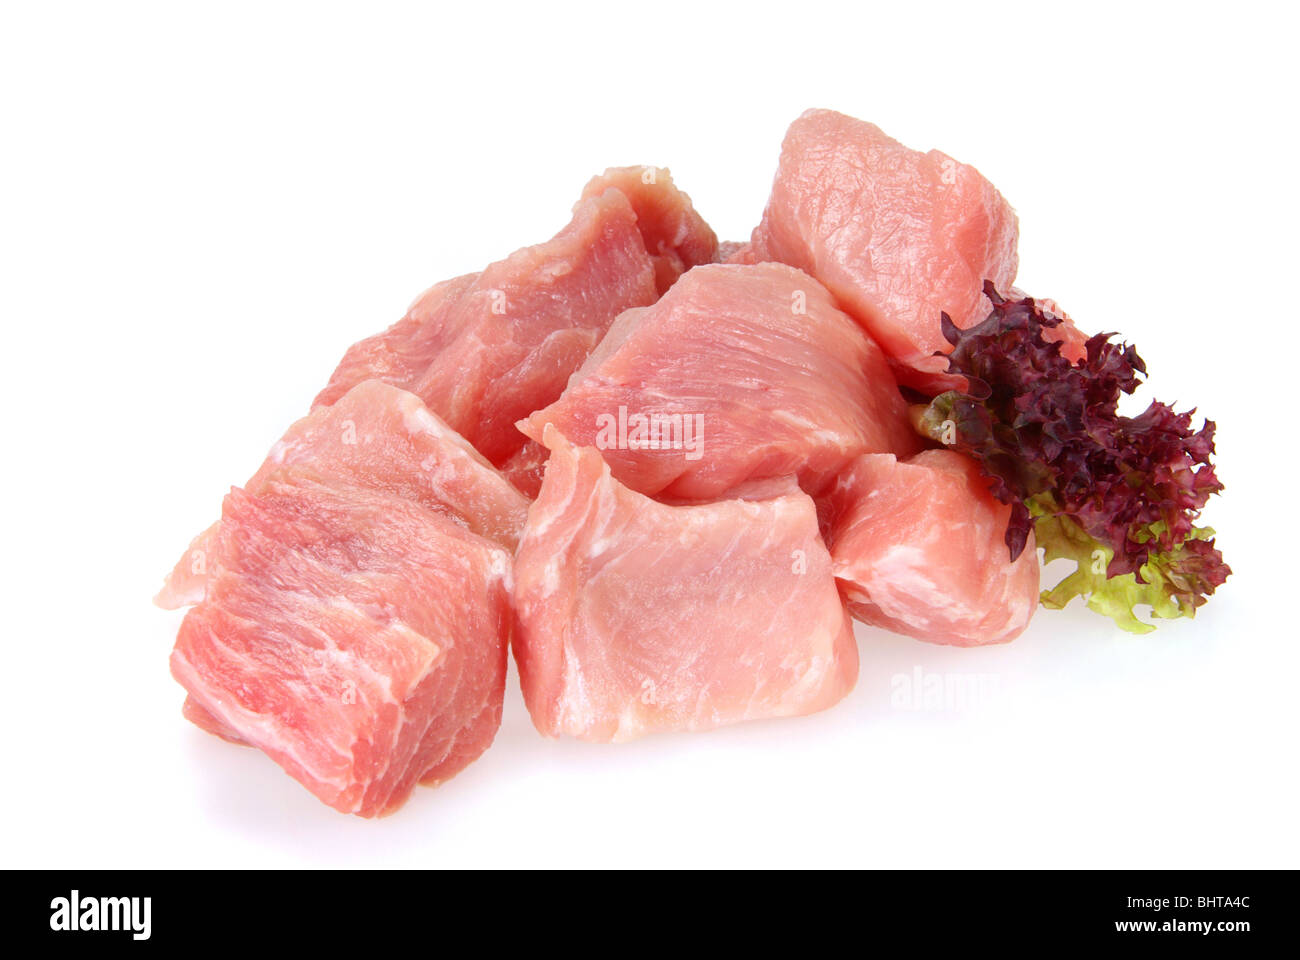 Schweinefleisch roh - pork raw 08 Stock Photo